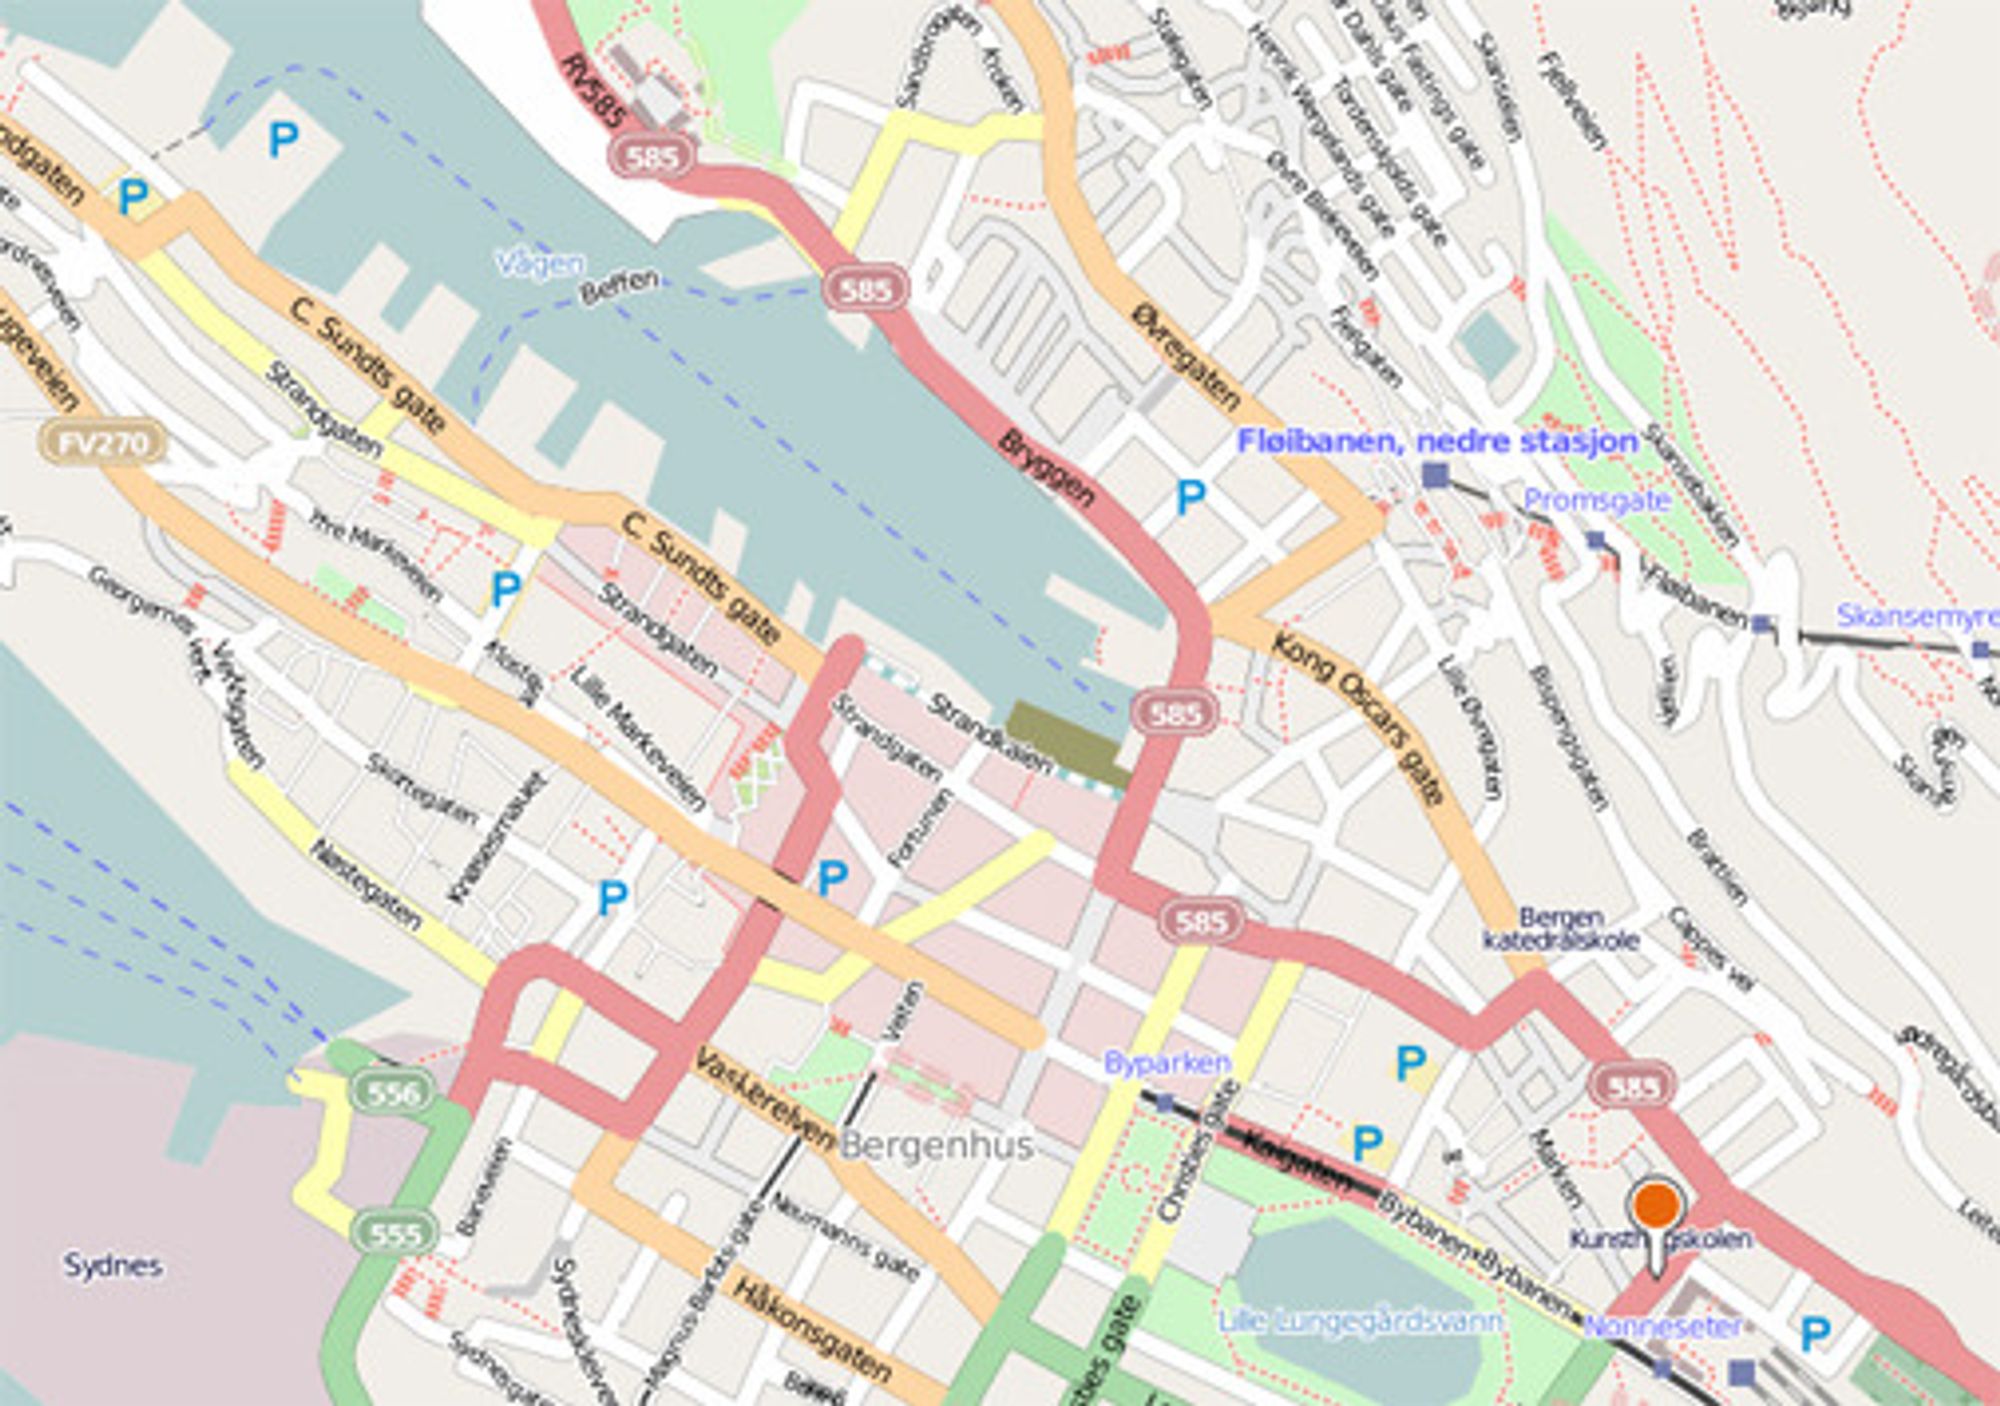 Slik ser sentrale Bergen ut med brukerskapte kartdata i Bing Maps med OpenStreetData.